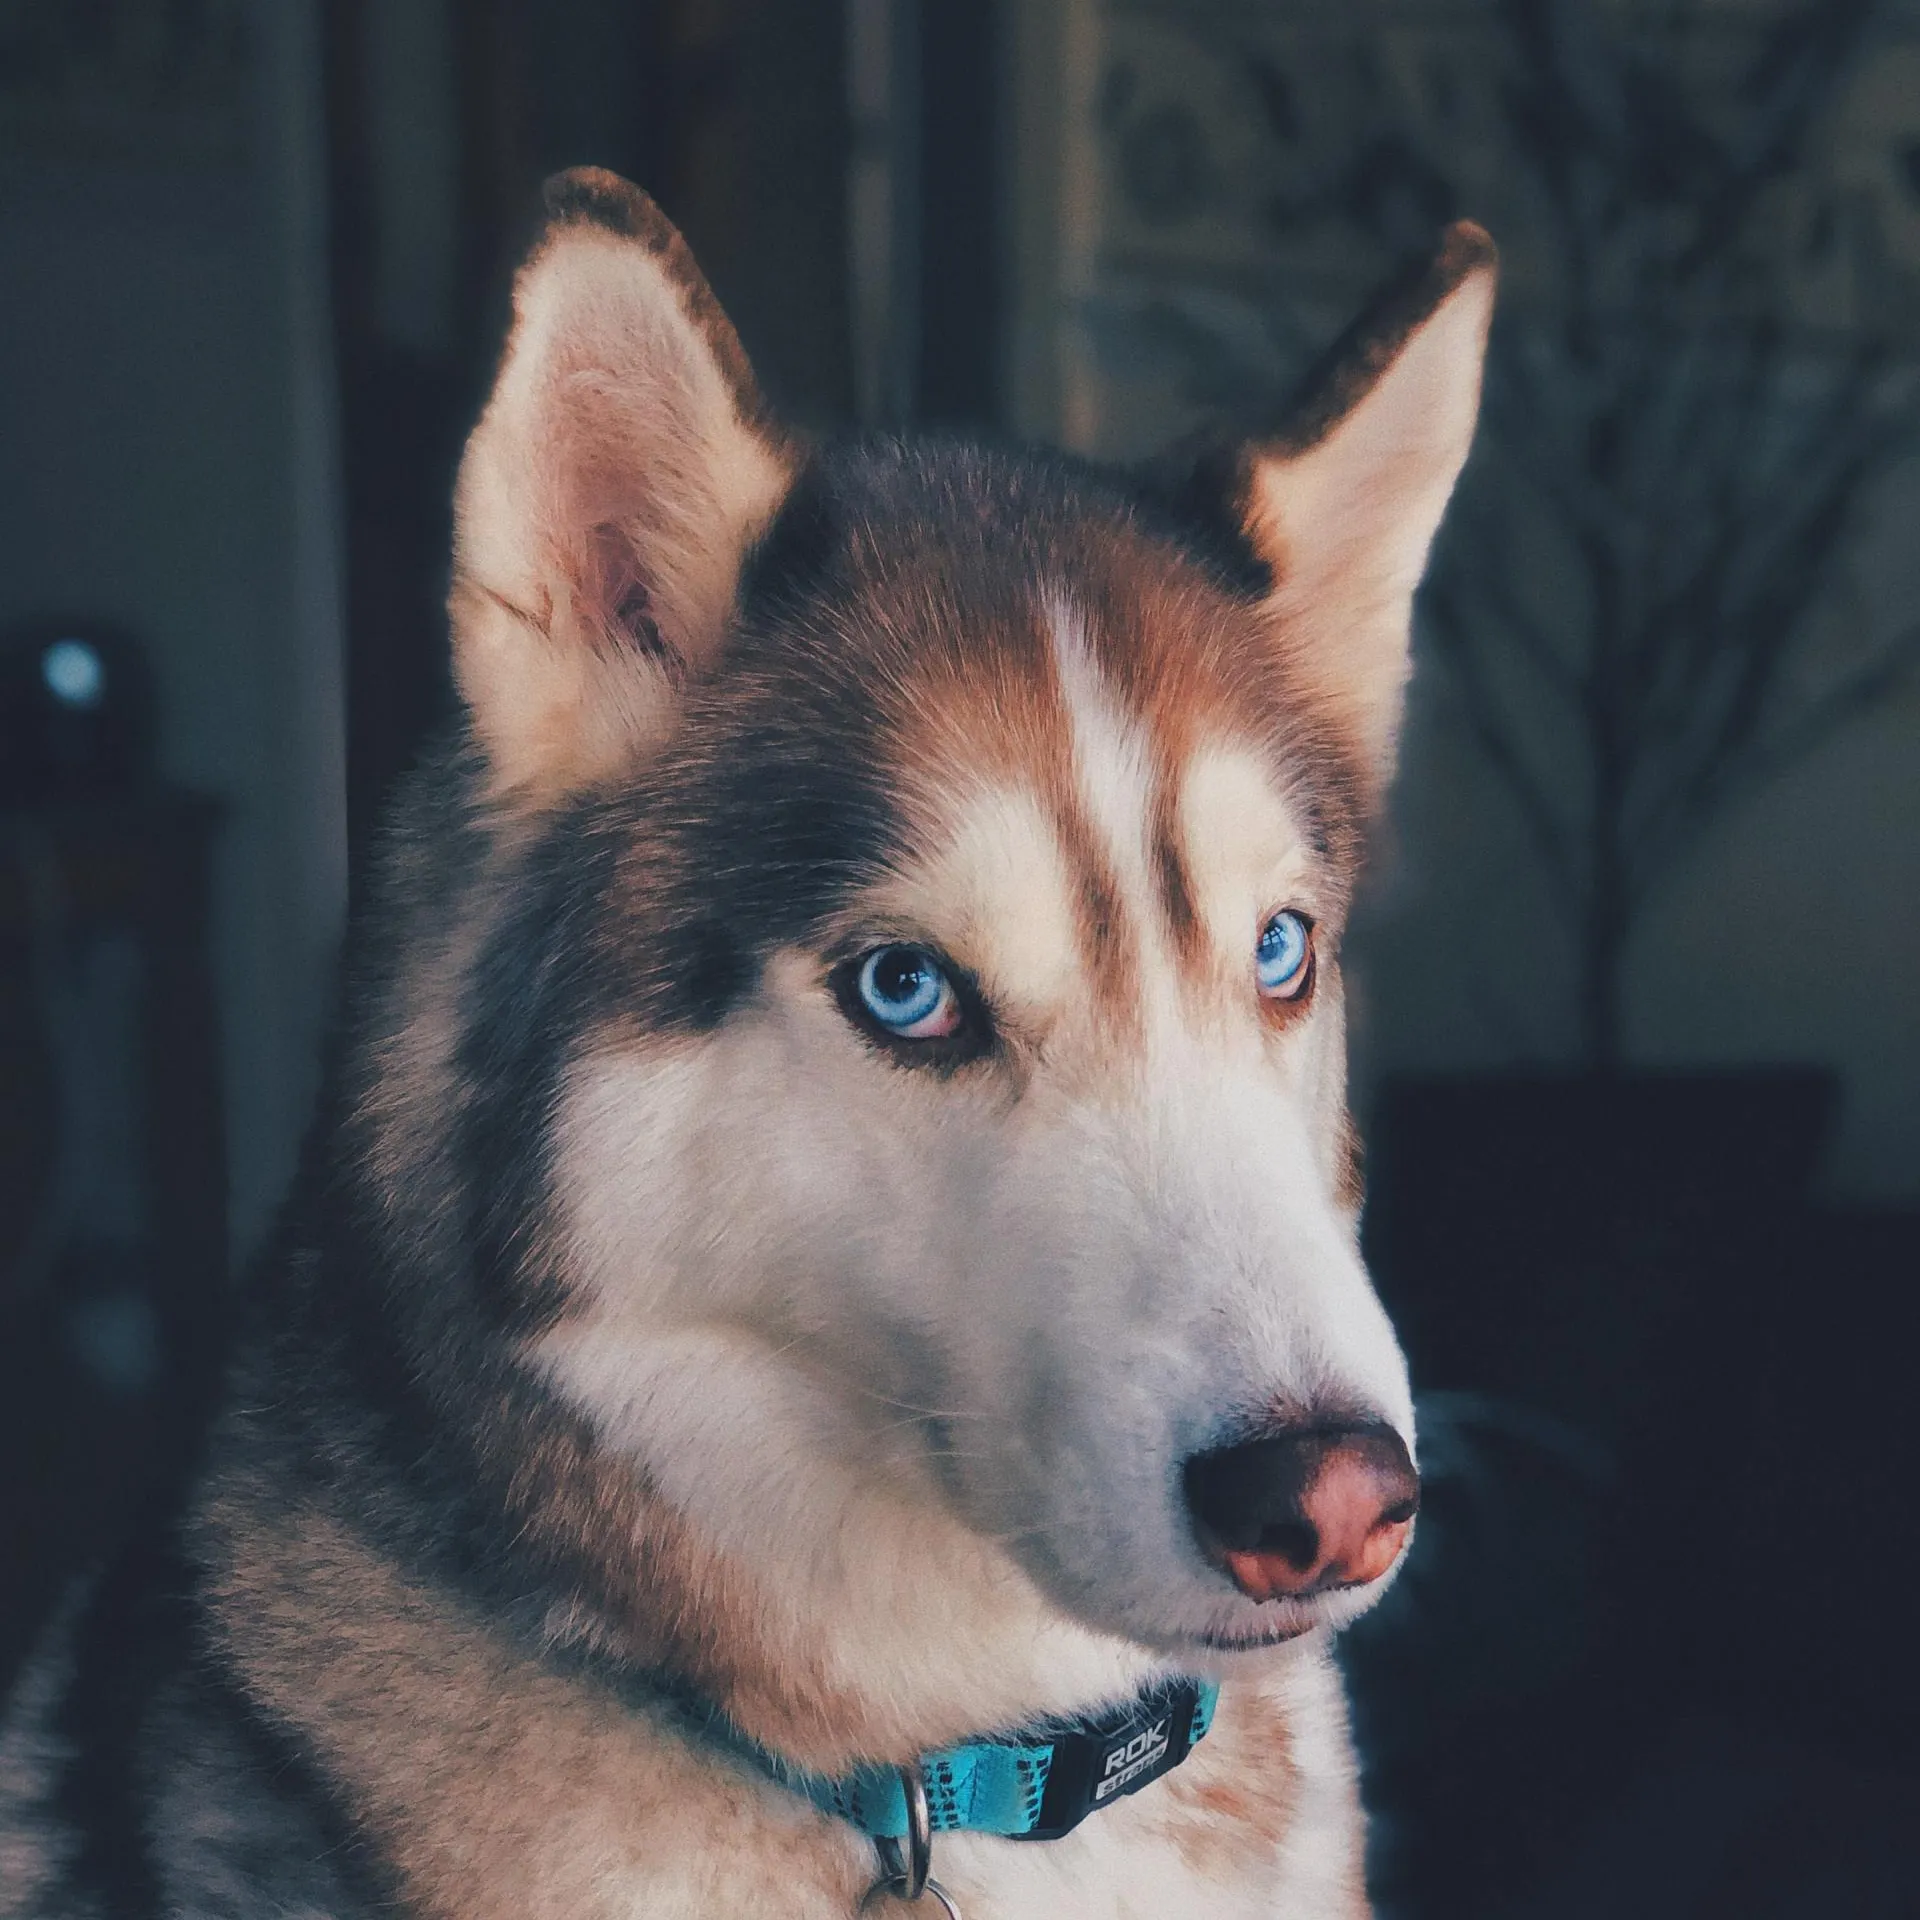 Husky dog with light blue eyes